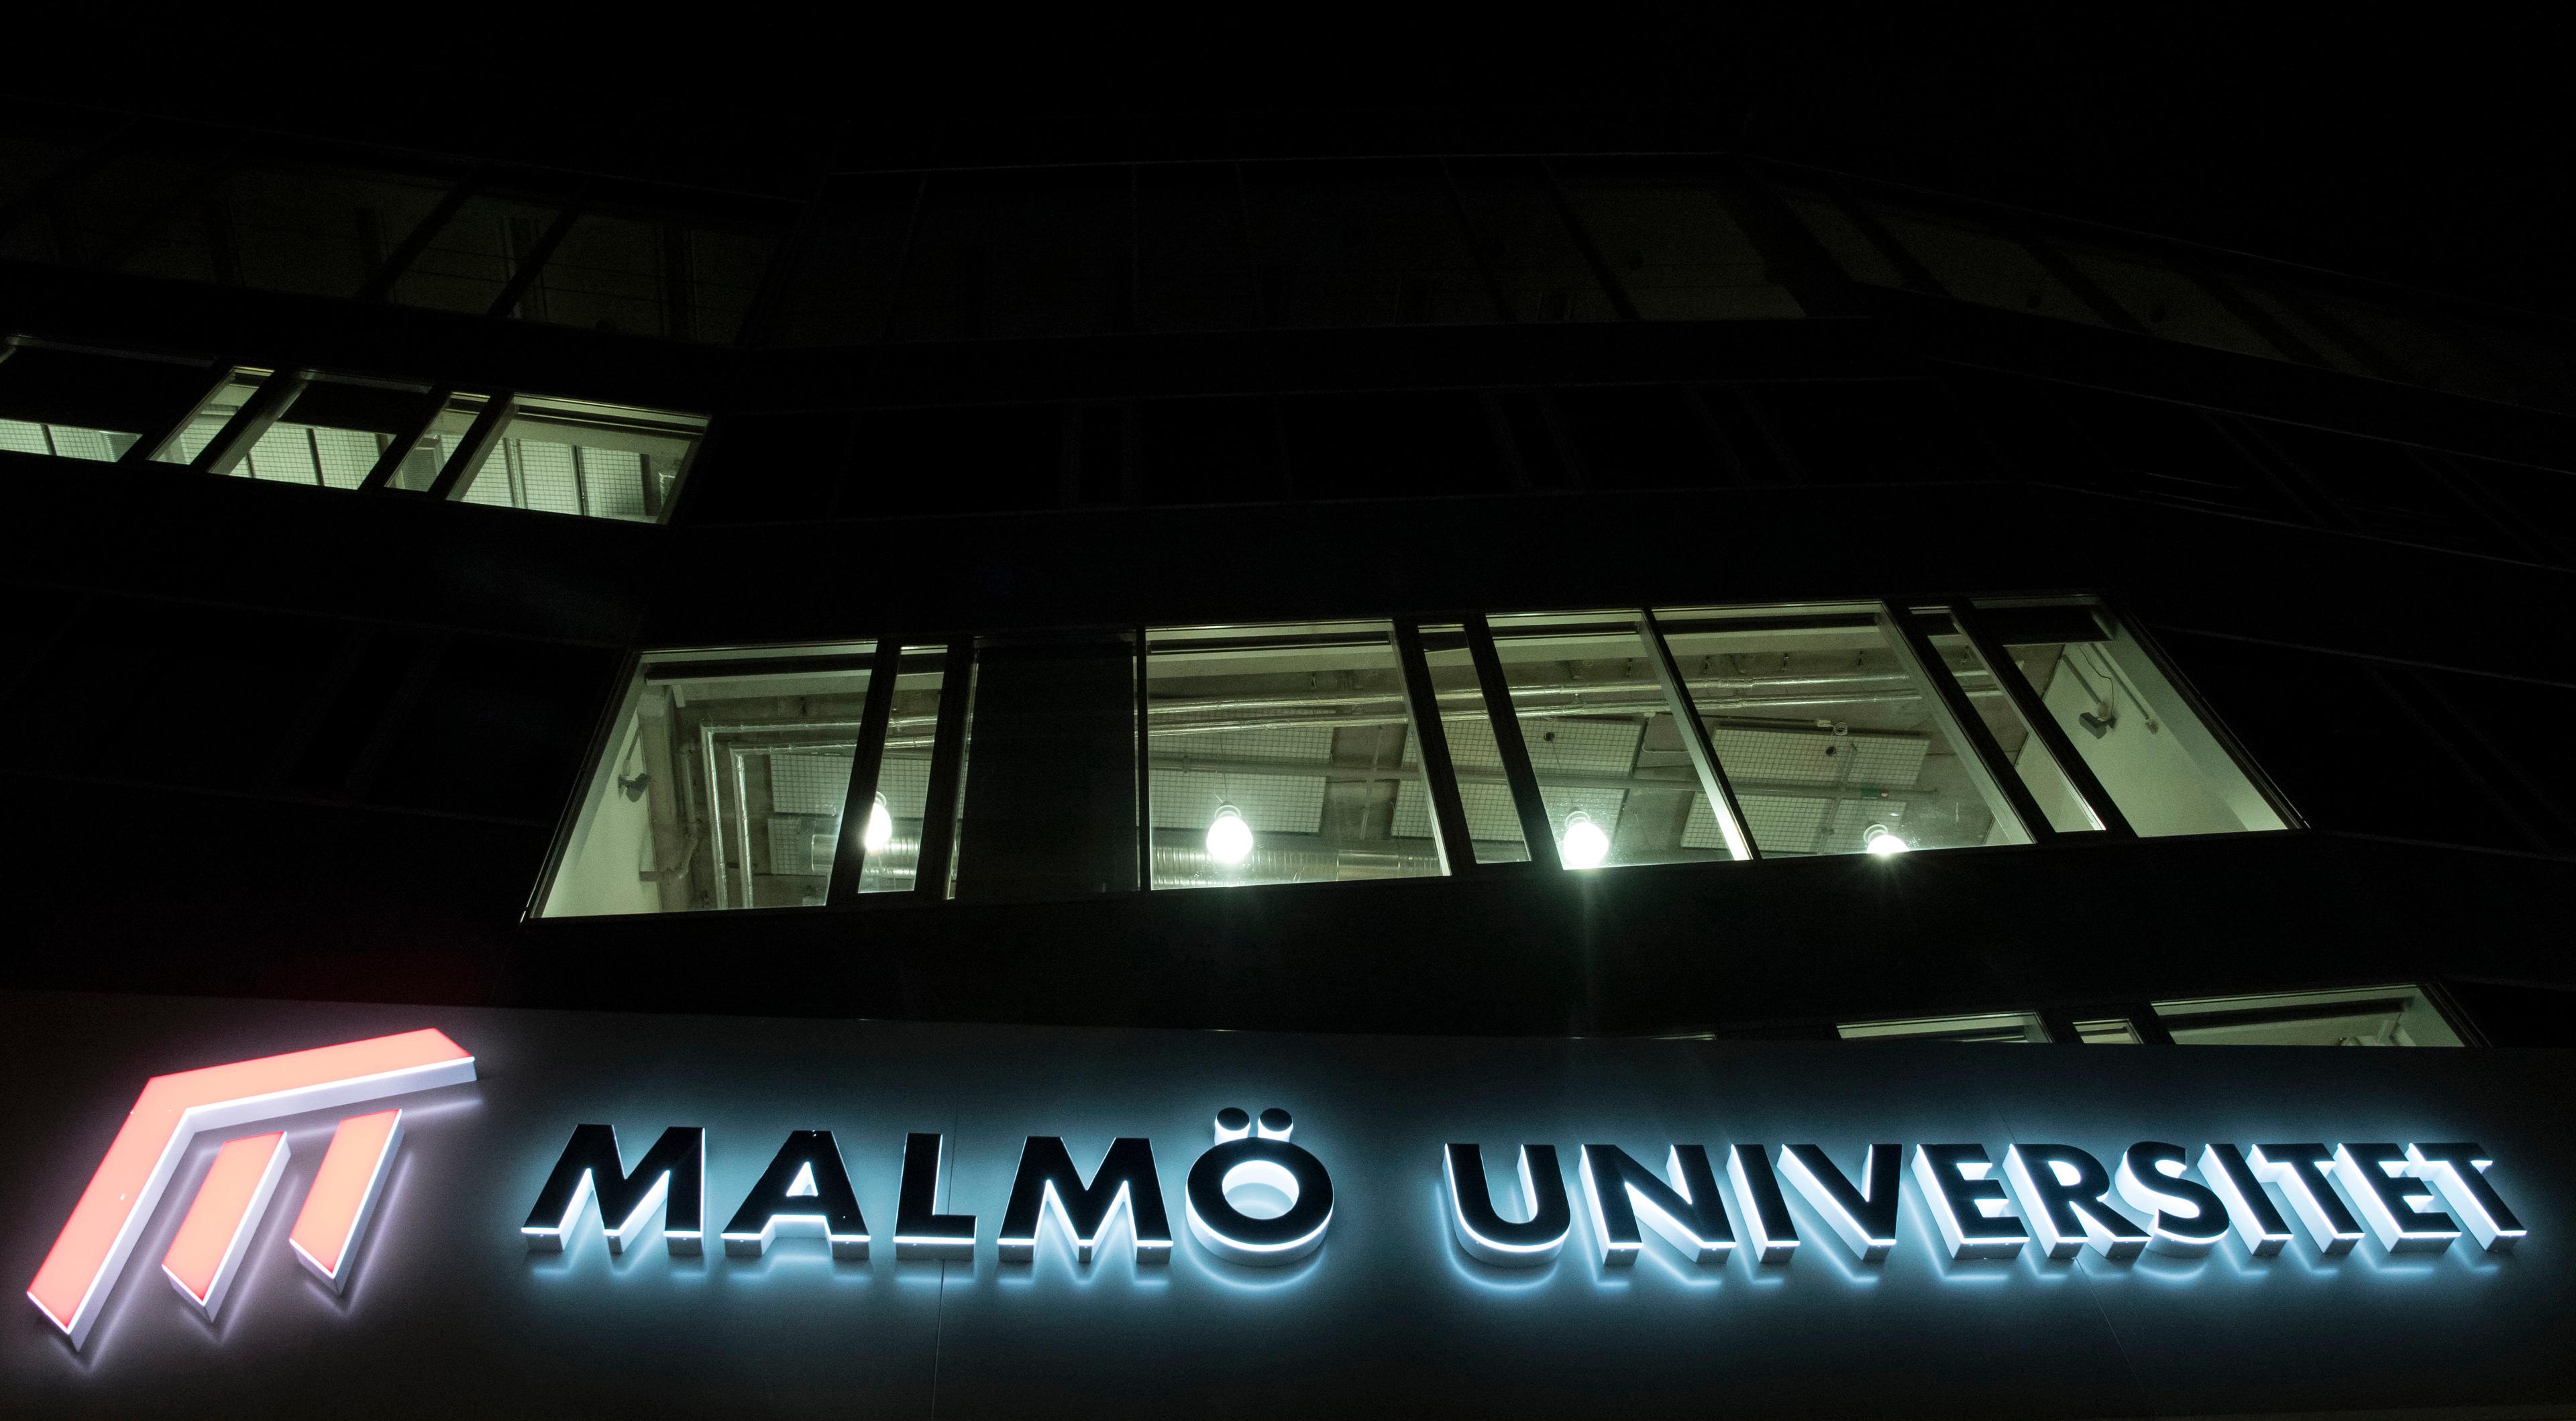 En forskare får betalt för att sluta på Malmö universitet. Arkivbild. Foto: Johan Nilsson/TT